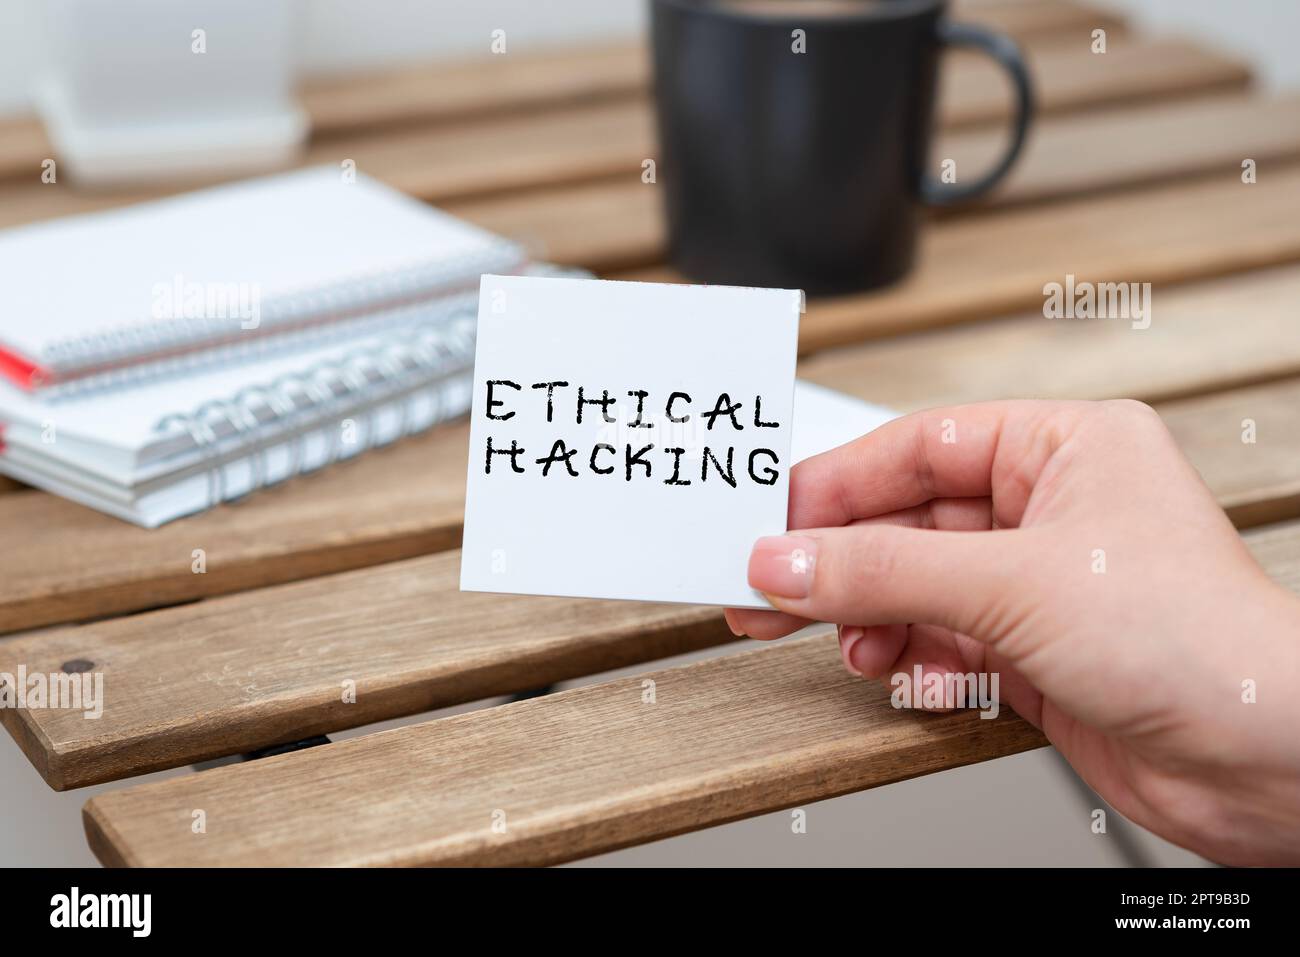 Konzeptionelle Darstellung ethischer Hacking, Wort für einen legalen Versuch, ein Netzwerk für Penetrationstests zu knacken Stockfoto